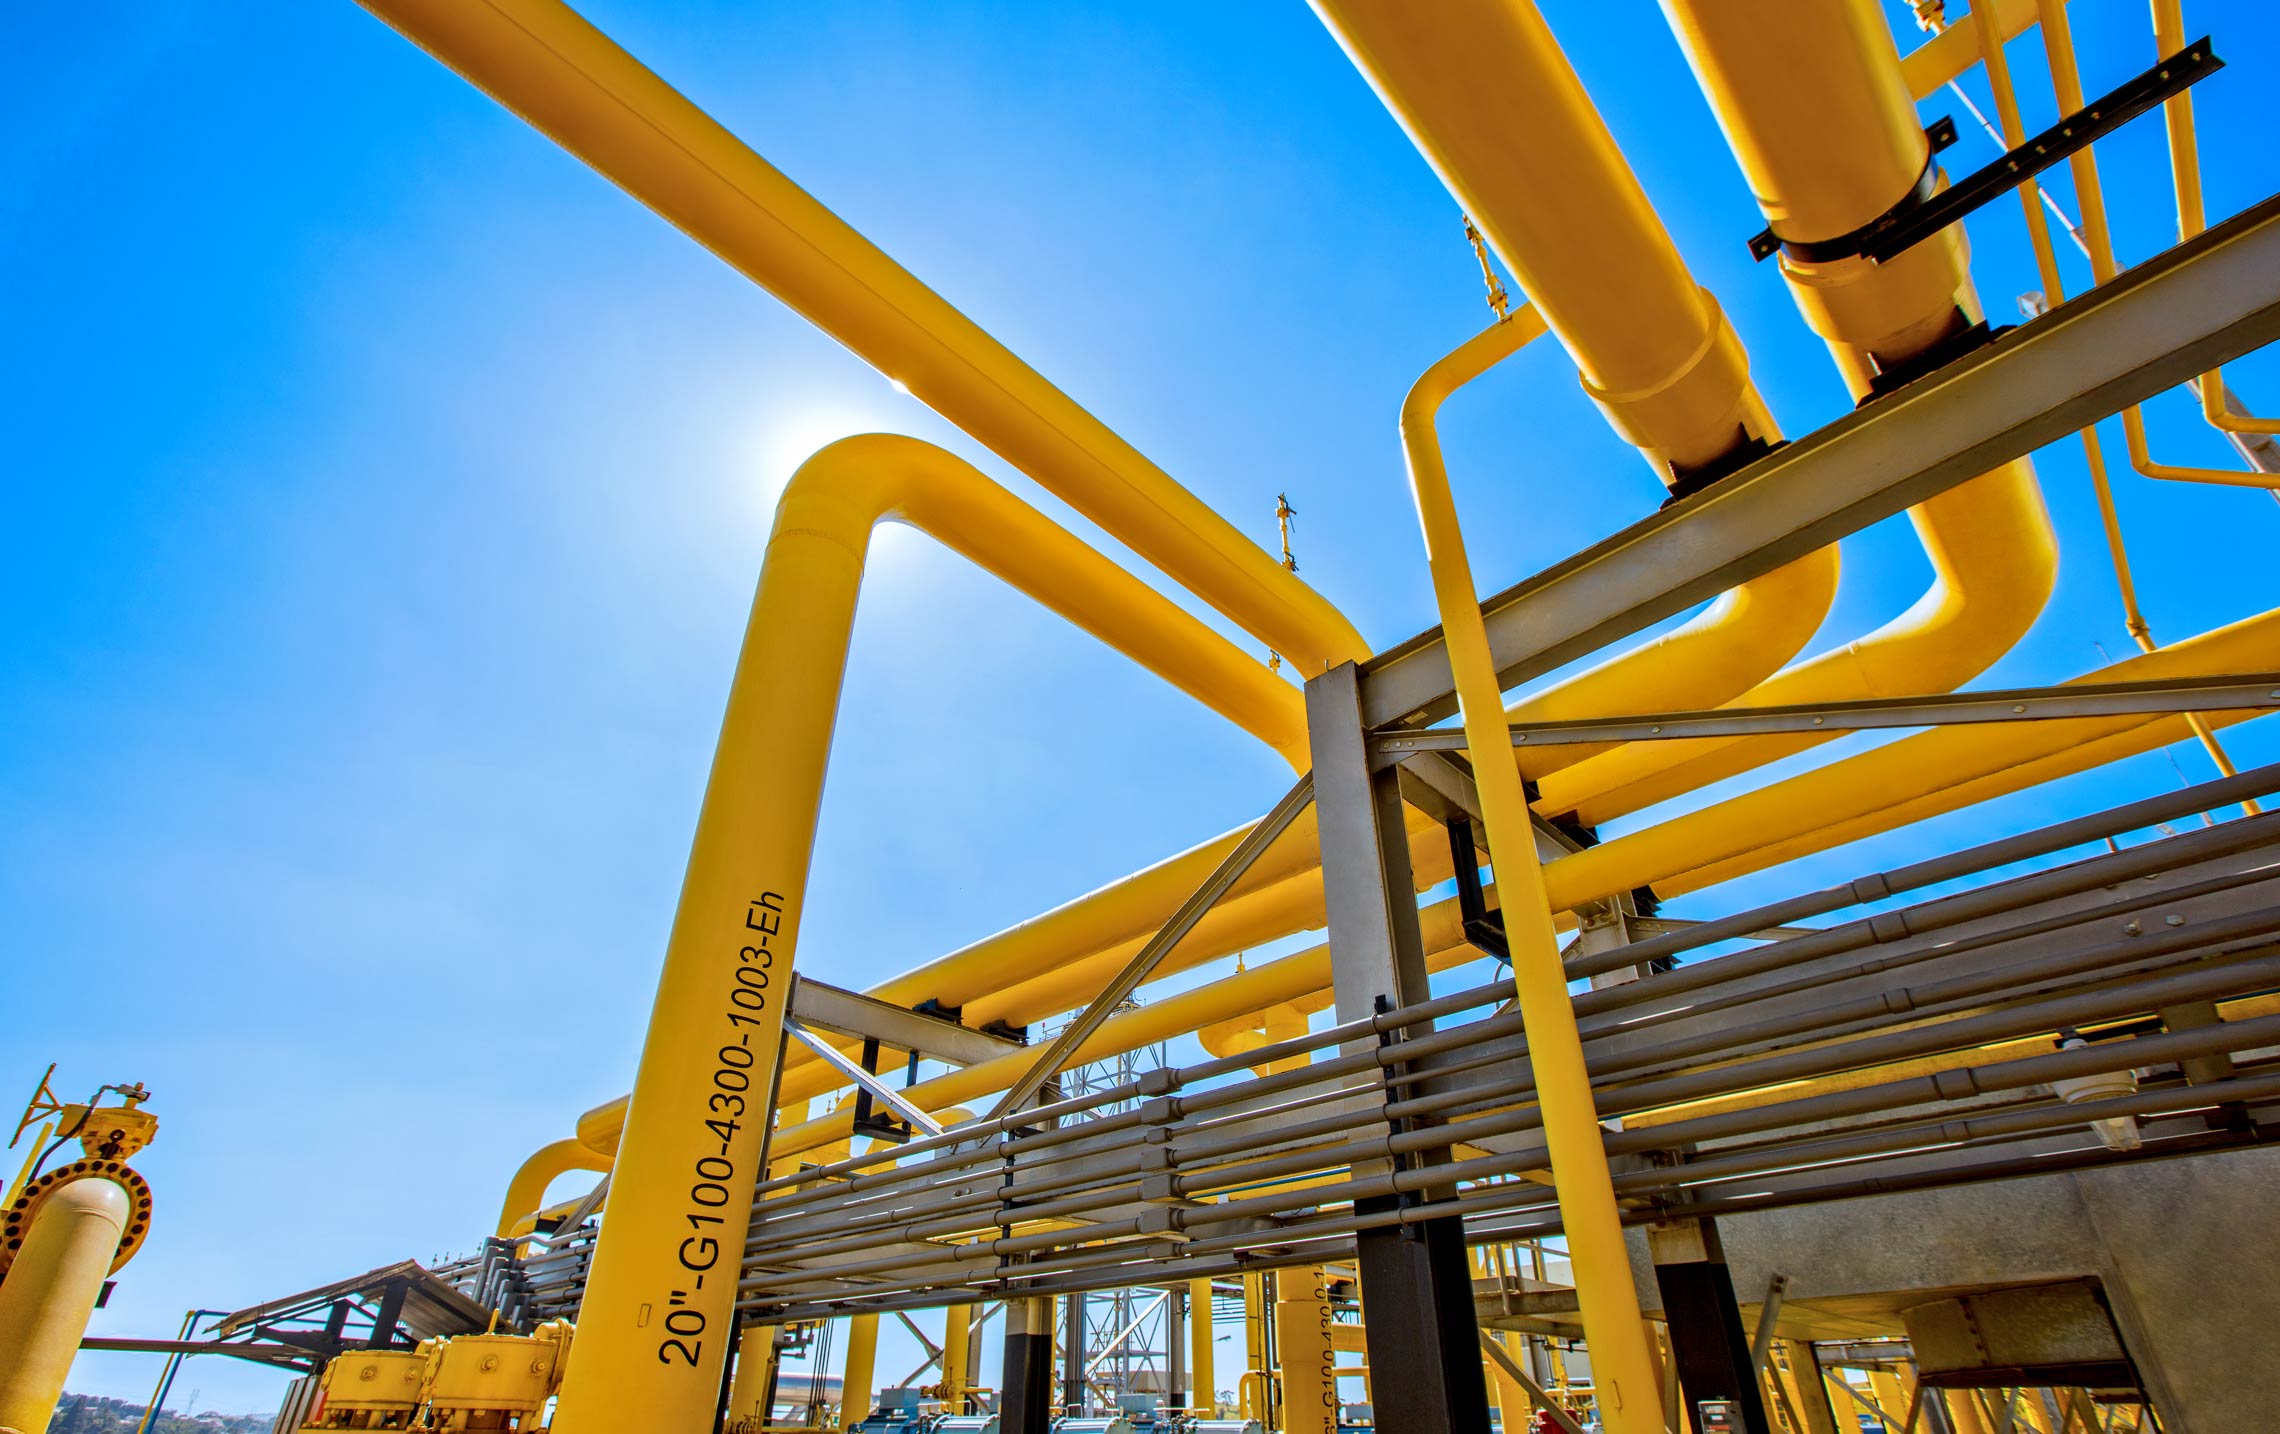 NTS quer ofertar capacidade de 12 milhões de m³ diários. Na imagem: Visão de baixo pra cima de instalações em gasoduto da NTS, com tubulações metálicas em amarelo, e céu azul ao fundo (Foto: Divulgação)